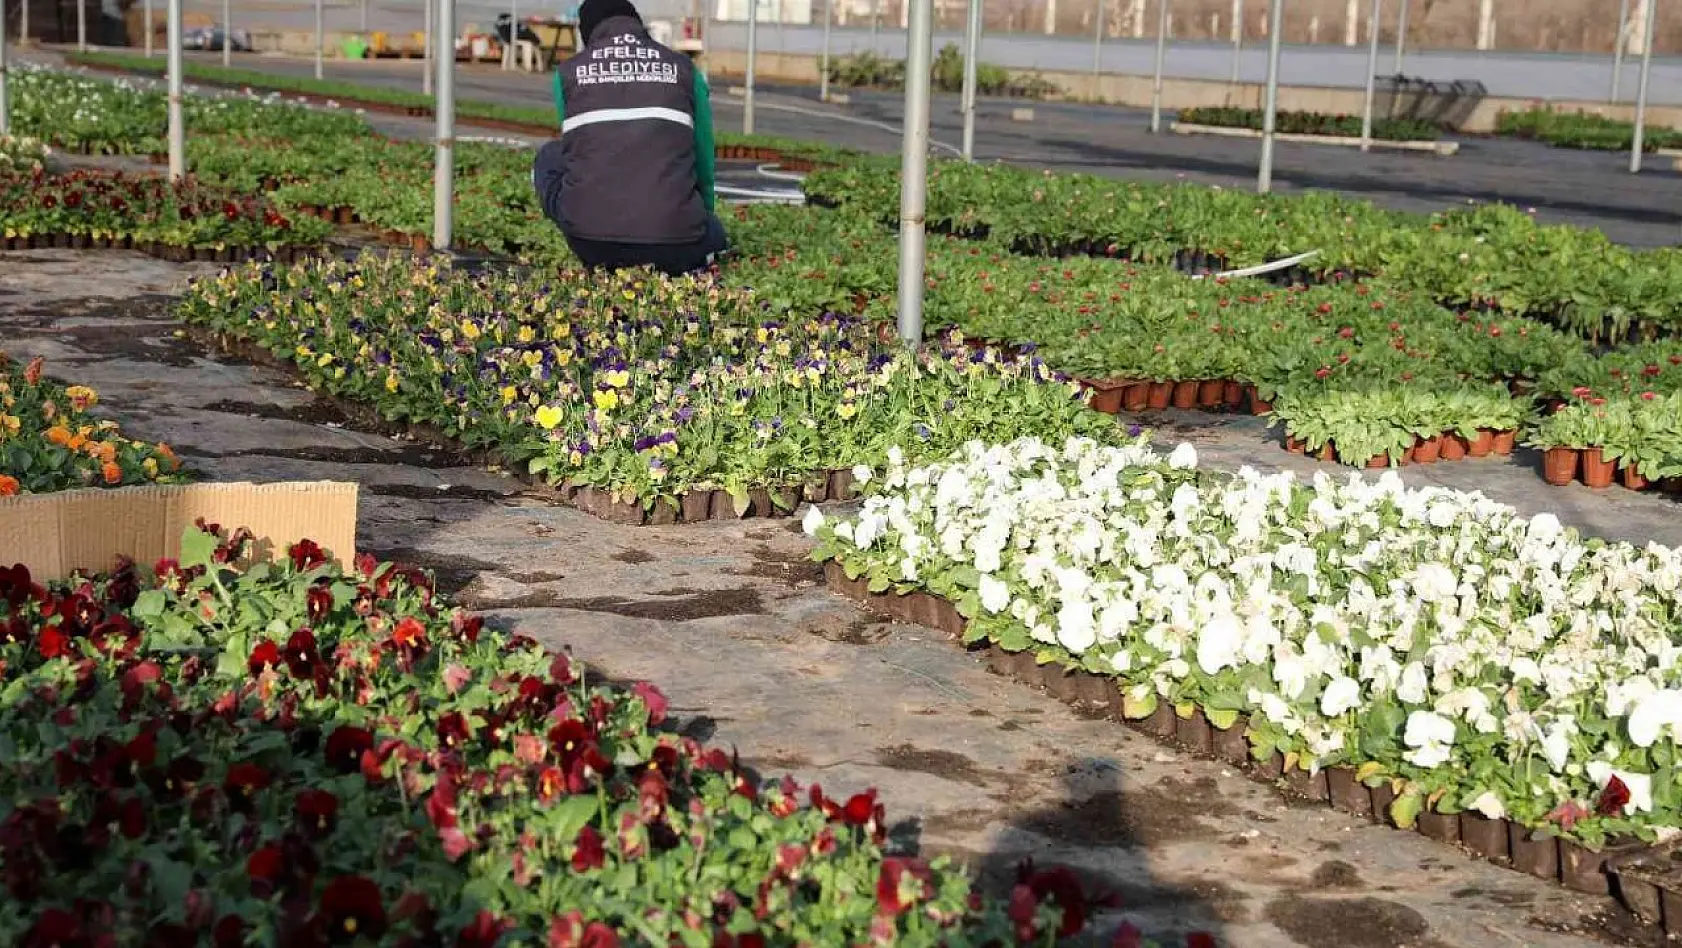 Efeler Belediyesi'nin yetiştirdiği çiçekler kenti süslüyor